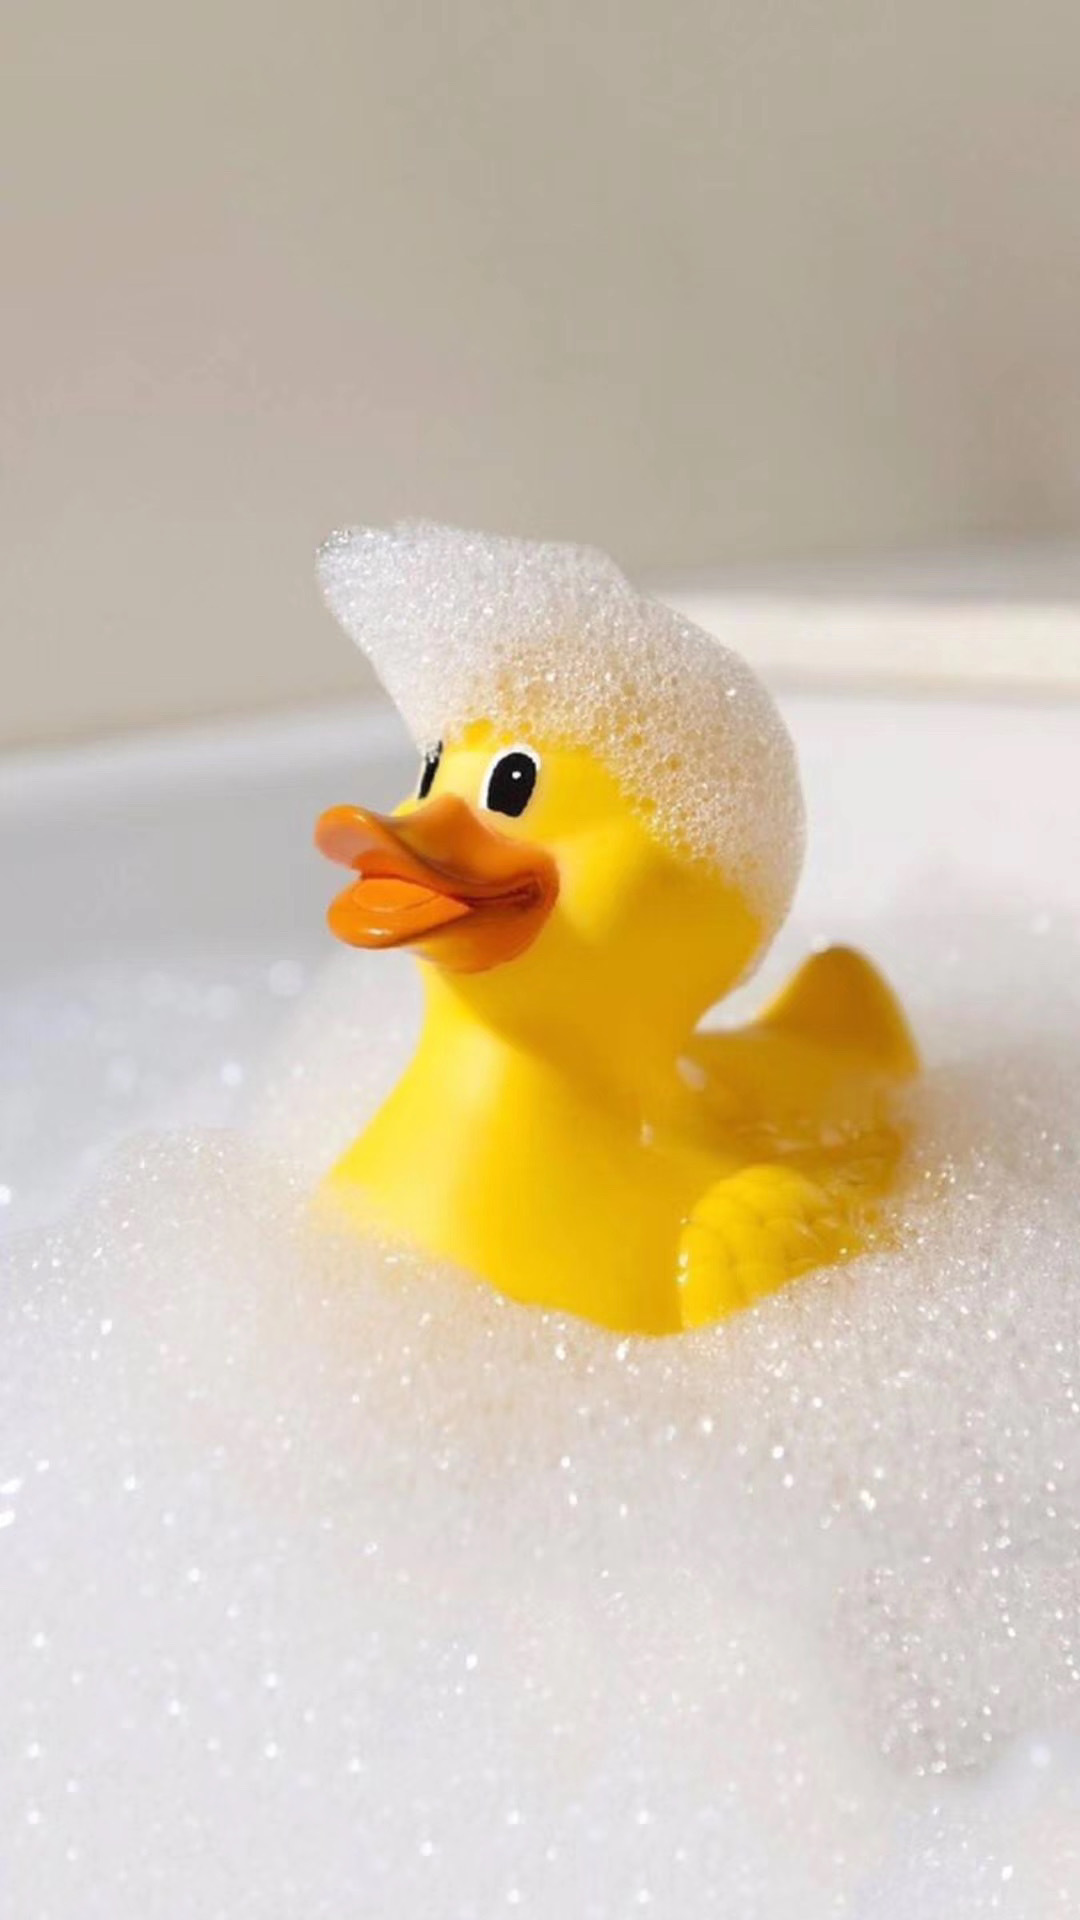 全是泡泡的浴缸里的大黄鸭